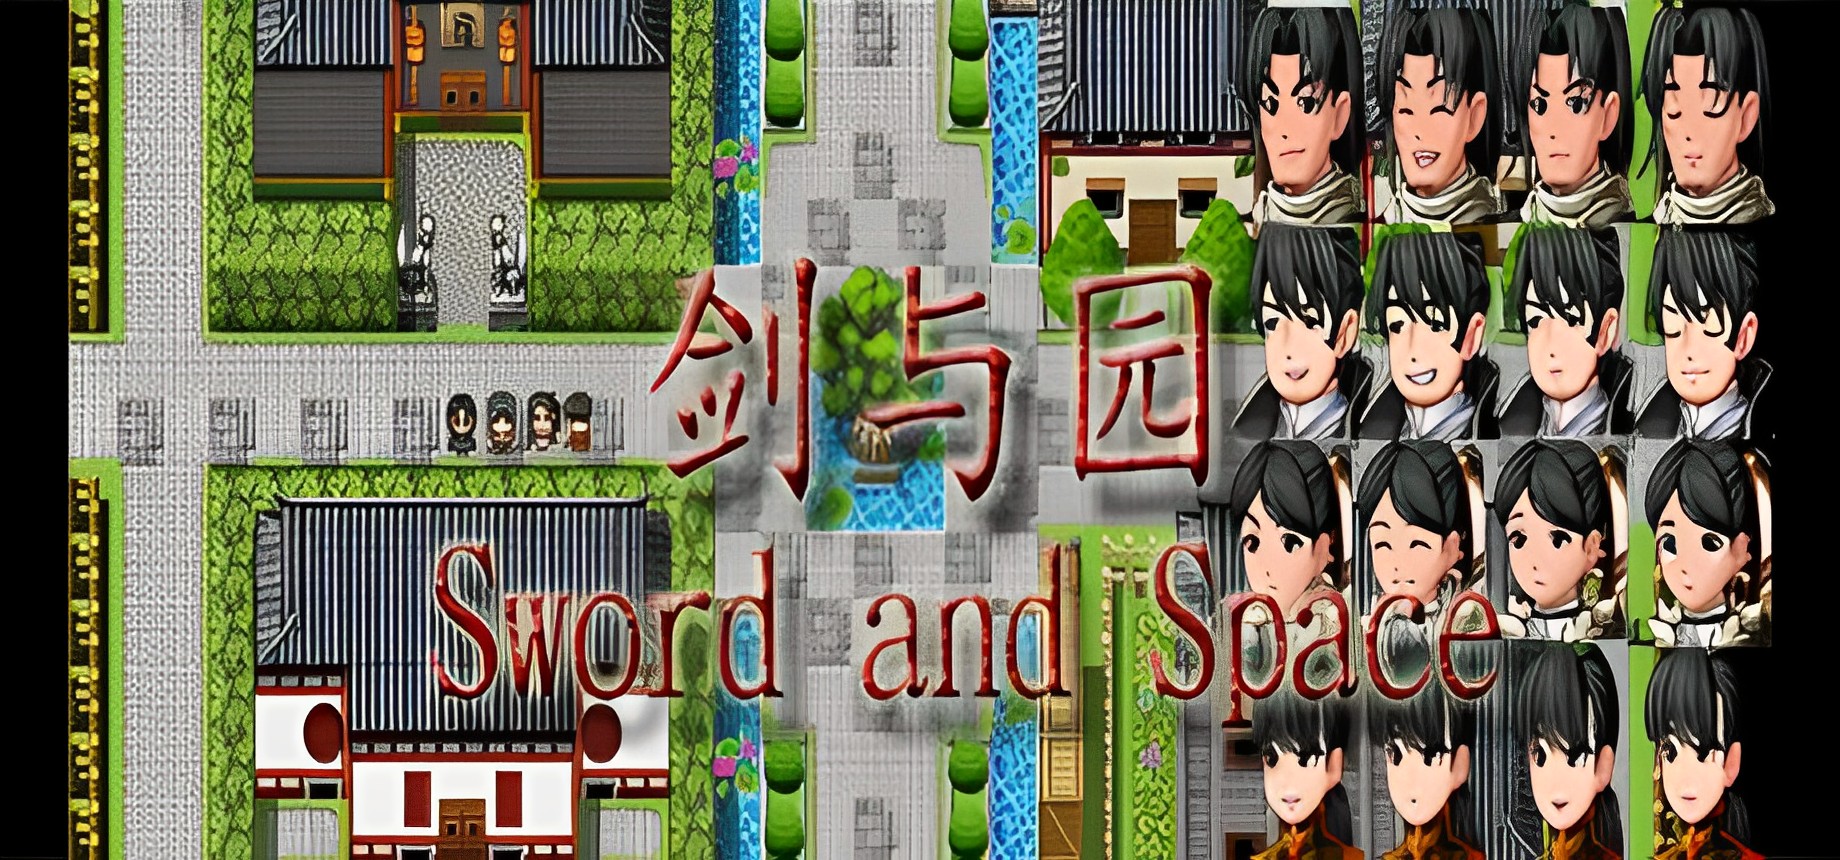 剑与园/Sword and Space